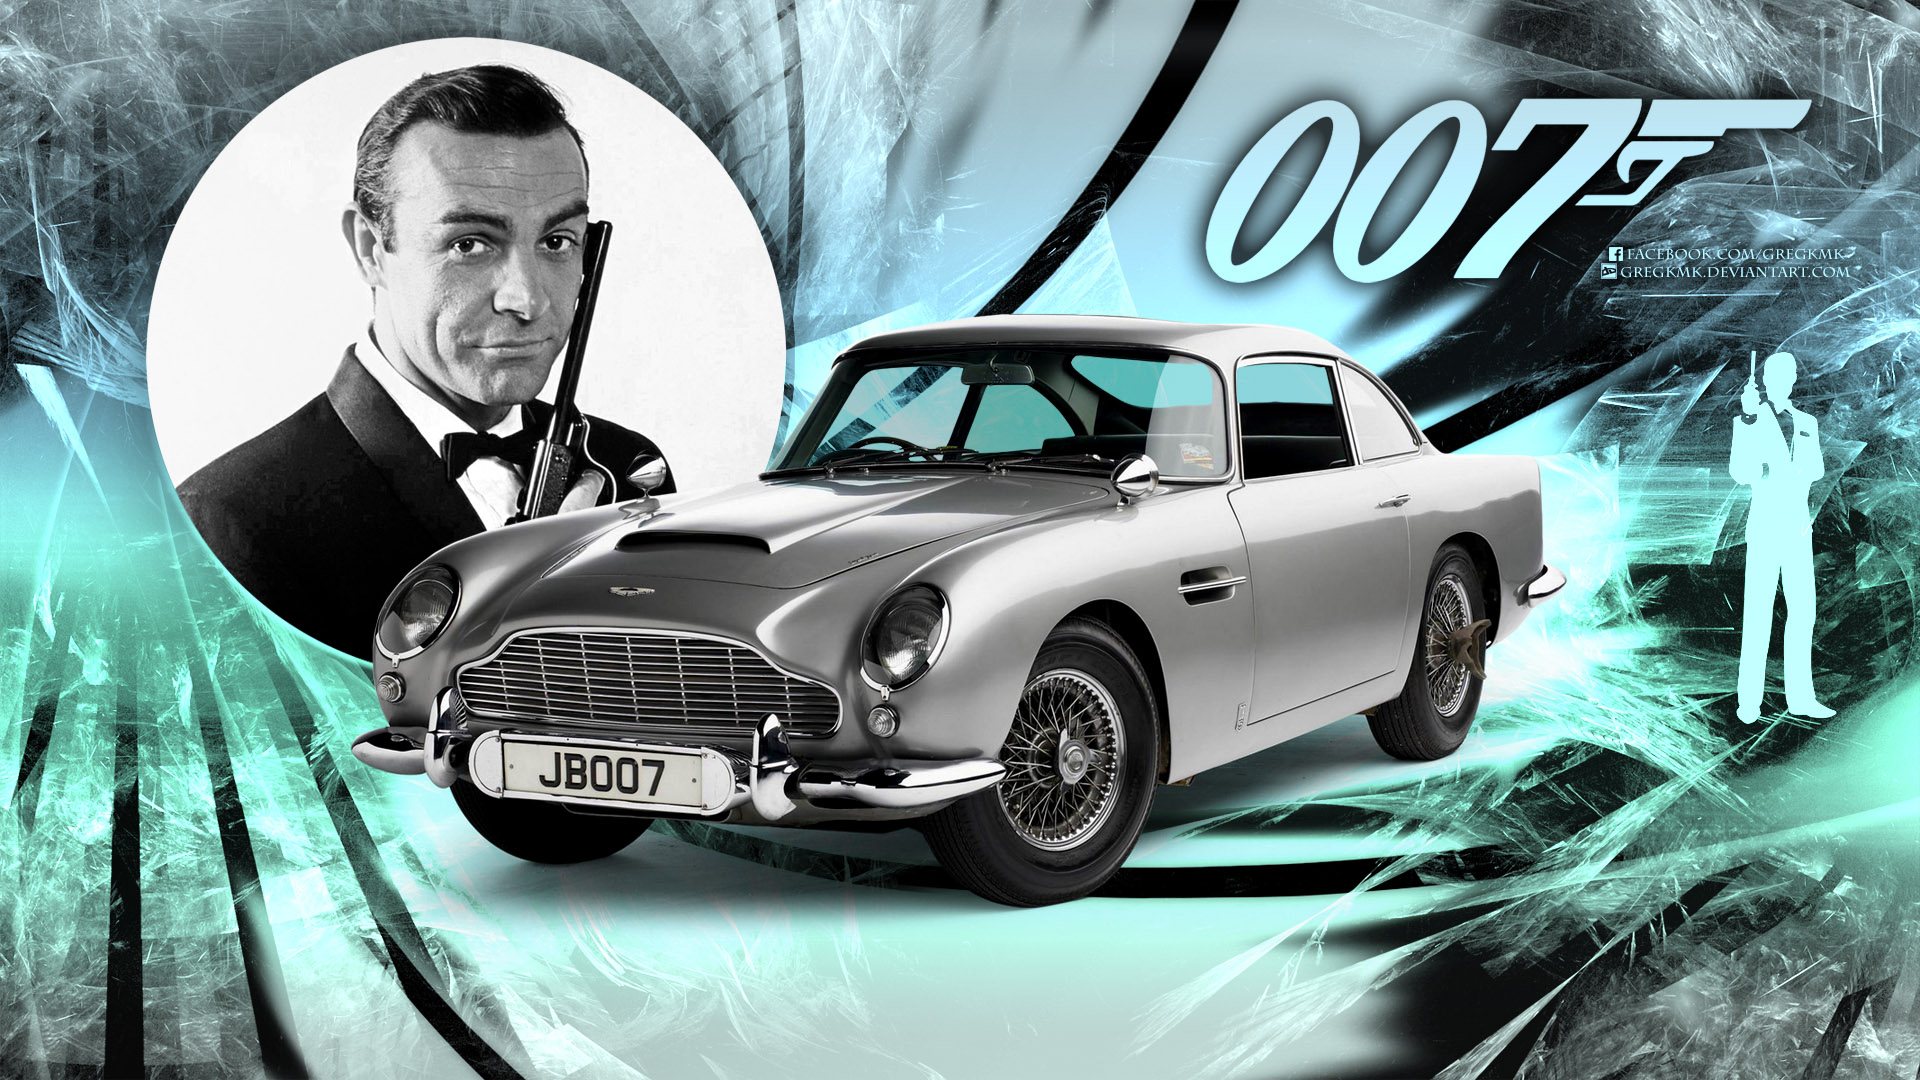 007 Aston Martin James Bond Sean Connery 1920x1080